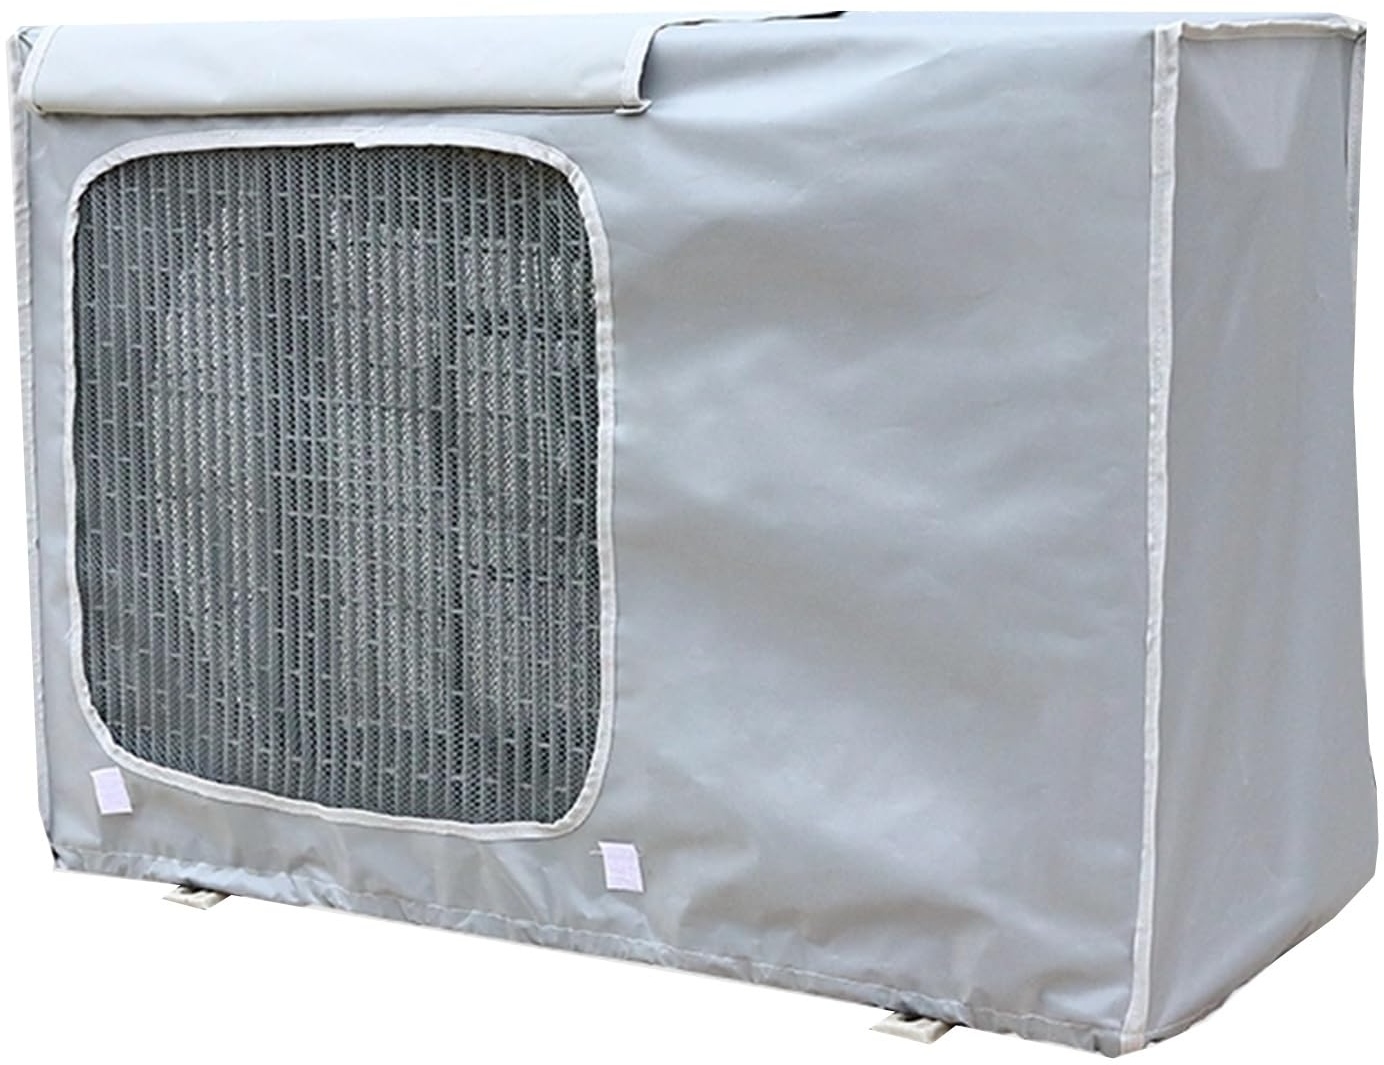 UTOYA Klimaanlagenabdeckung for Außengeräte - Betrieb Draussen Fenster Mini-Split-AC-Abdeckung, Schwerlast 600D Oxford-Stoff Wetterfest PVC Panel,anpassbar (Color : Light Gray, Size : 94 * 68 * 36cm)